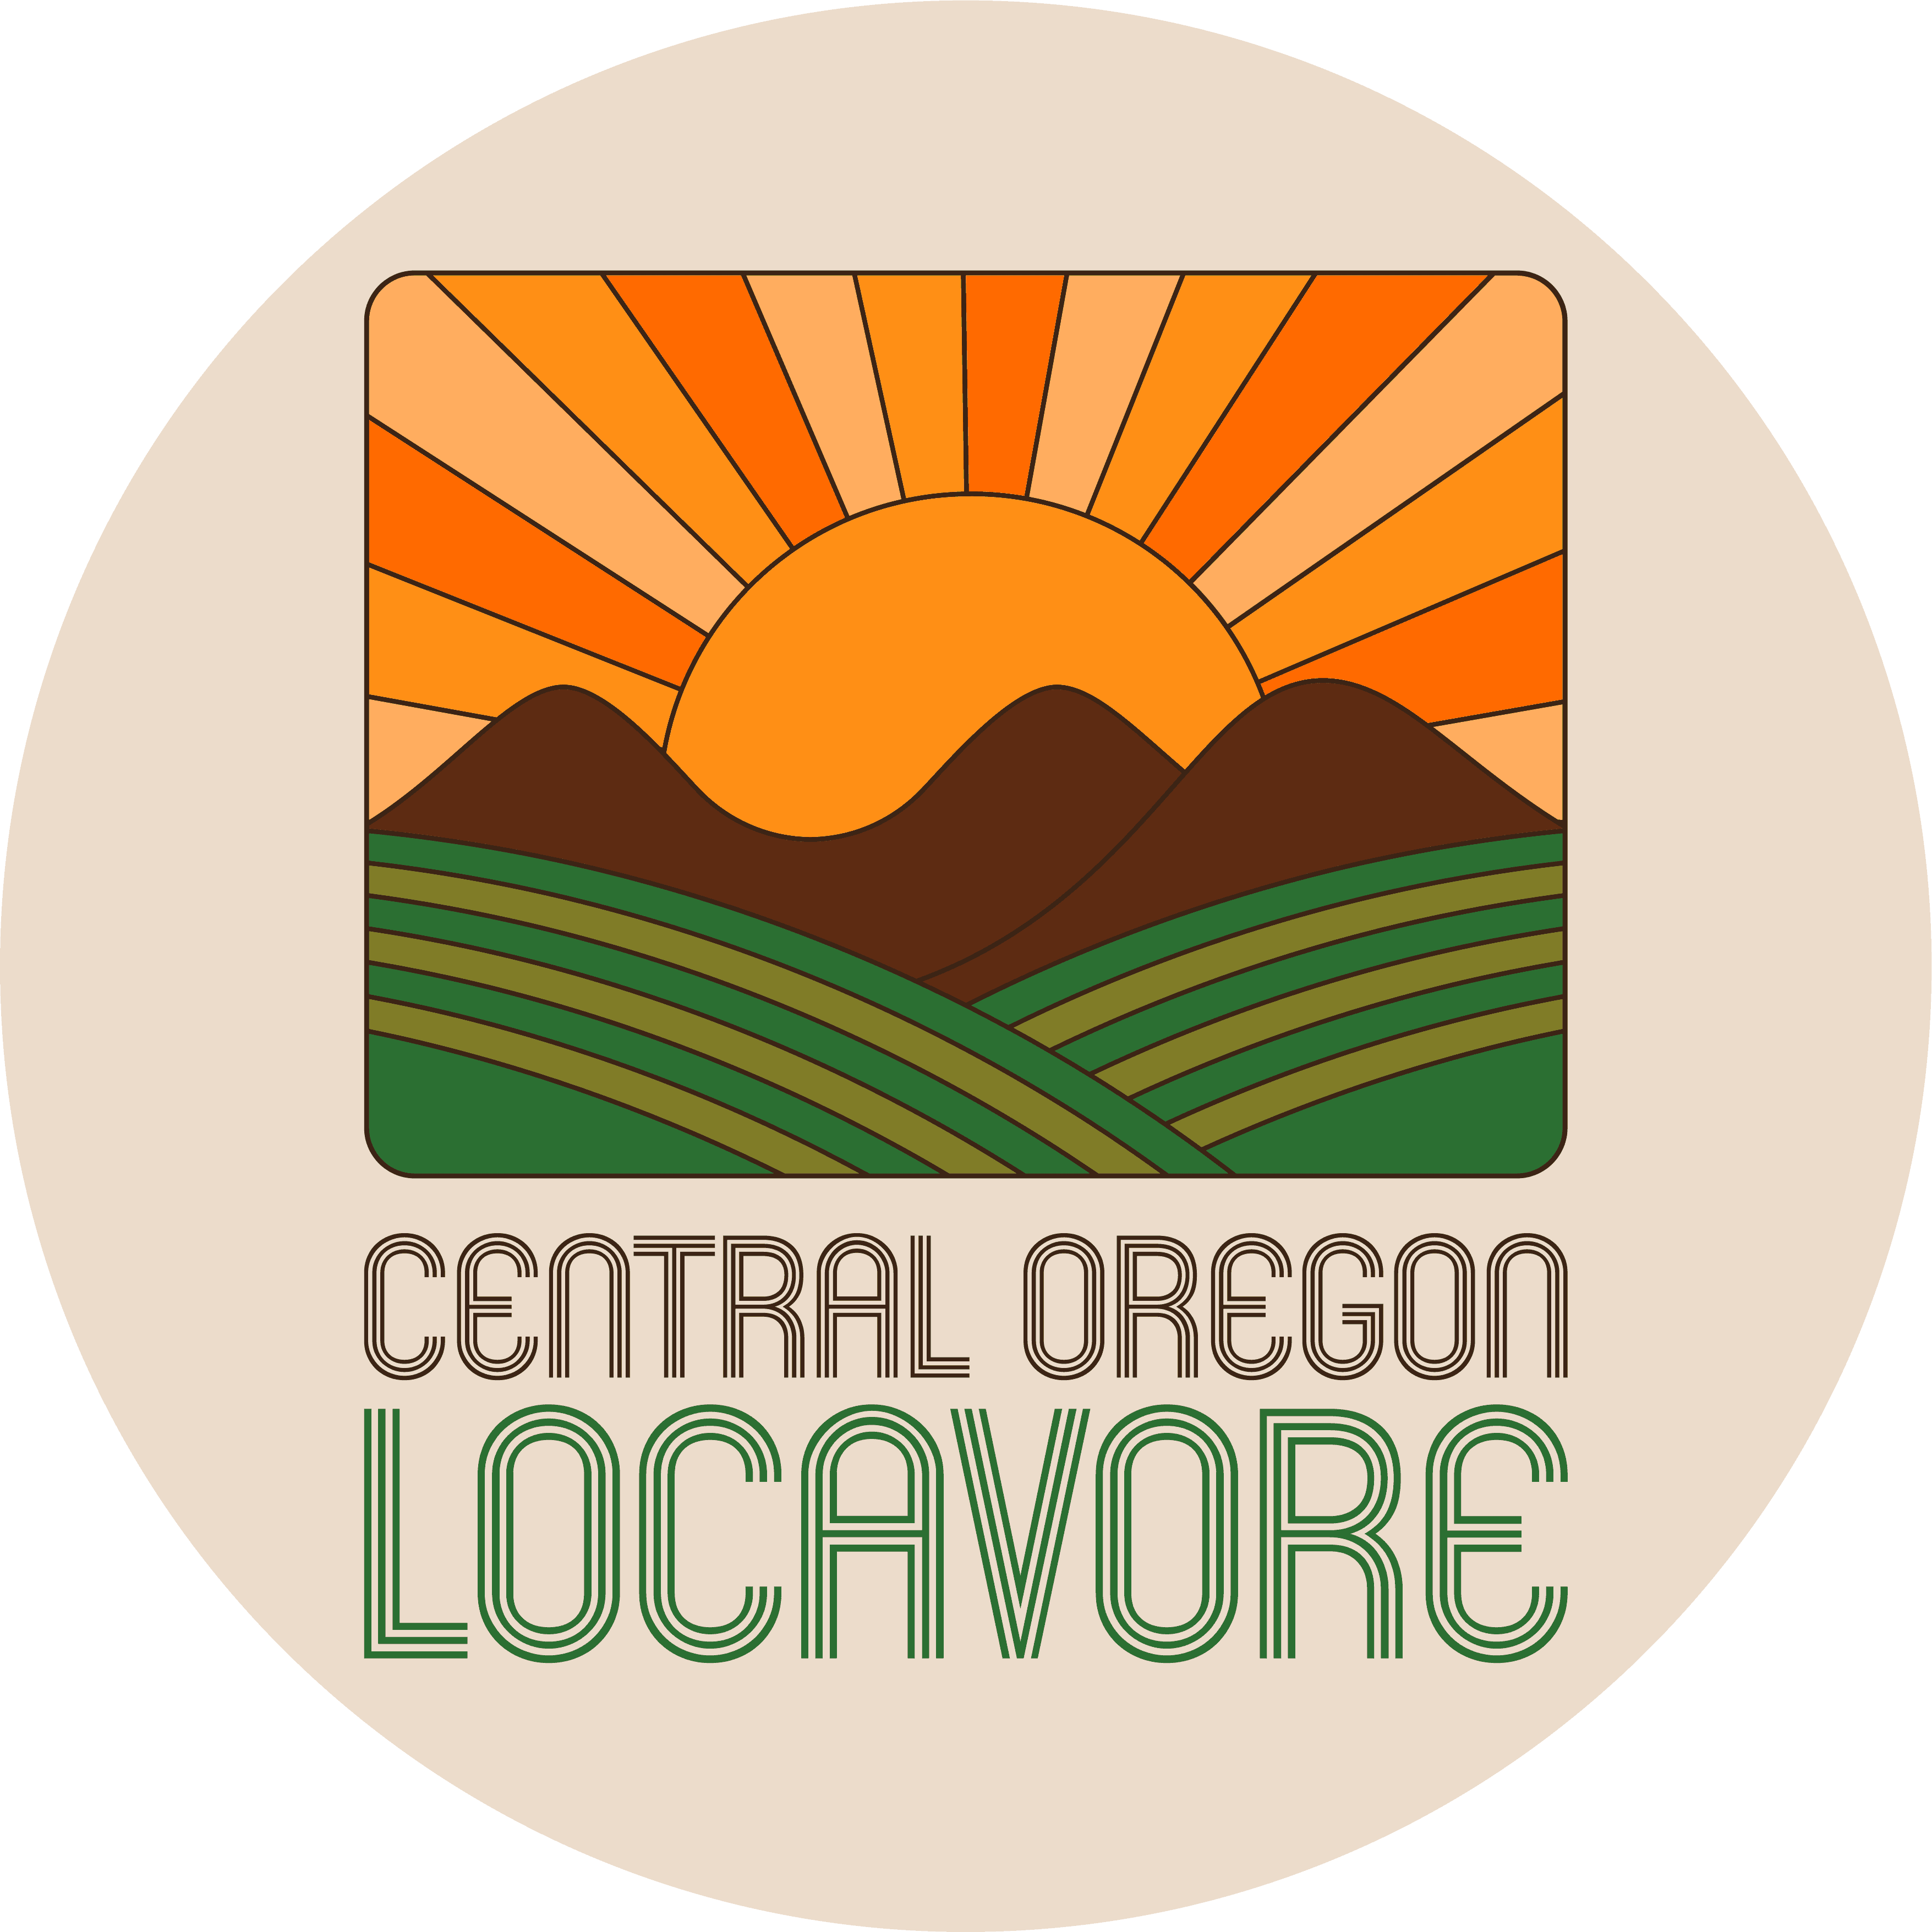 Central Oregon Locavore